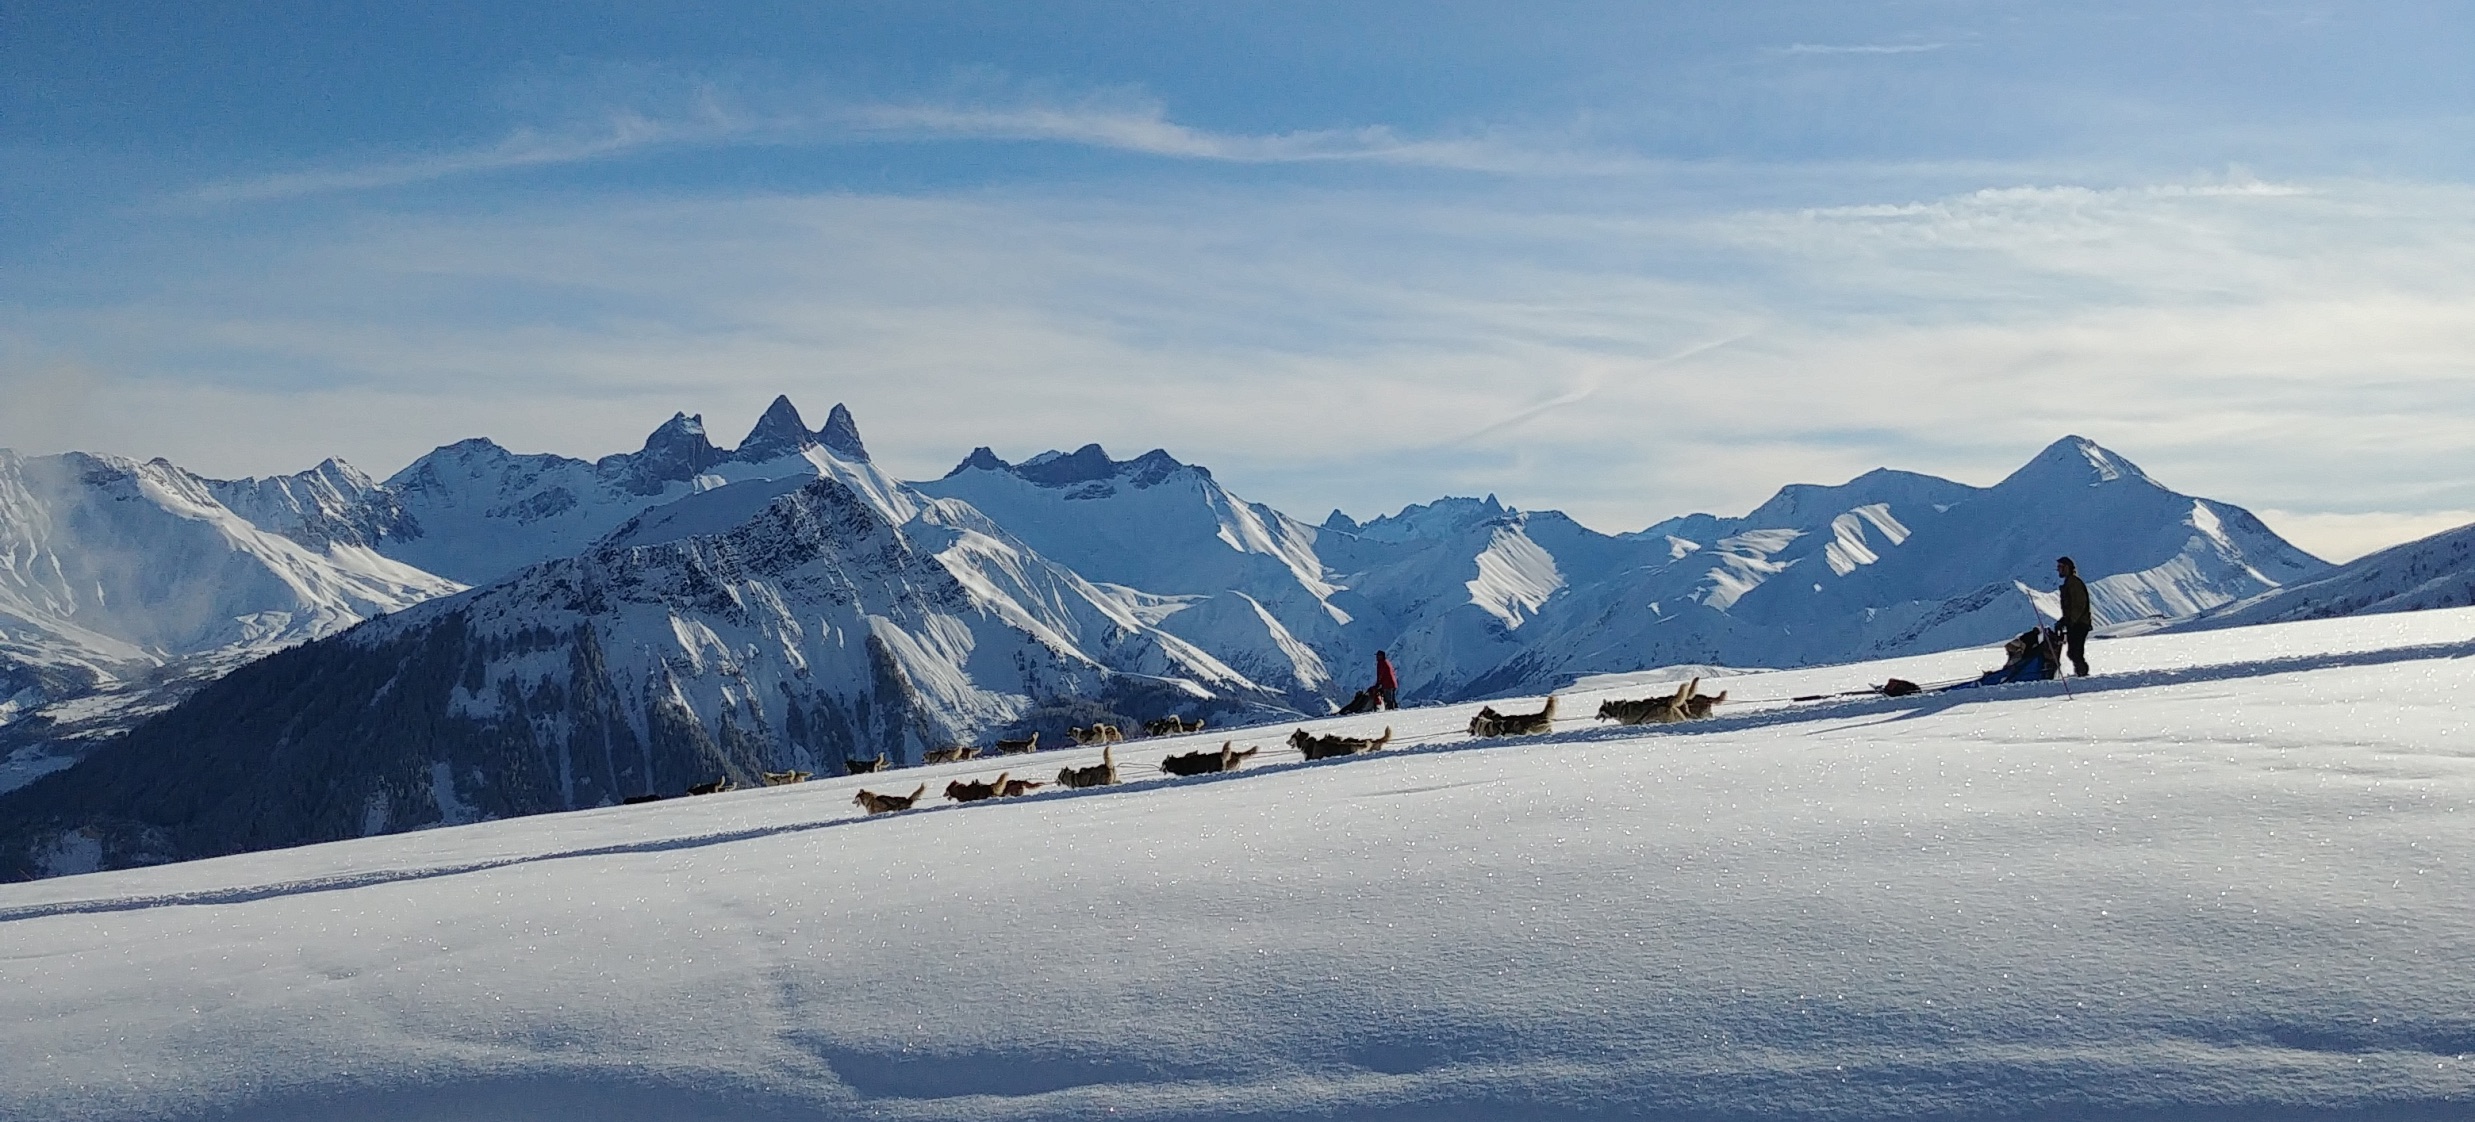 Un attelage de chiens de traineaux sur une pente enneigée avec les montagnes et les Aiguilles d'Arves au second plan